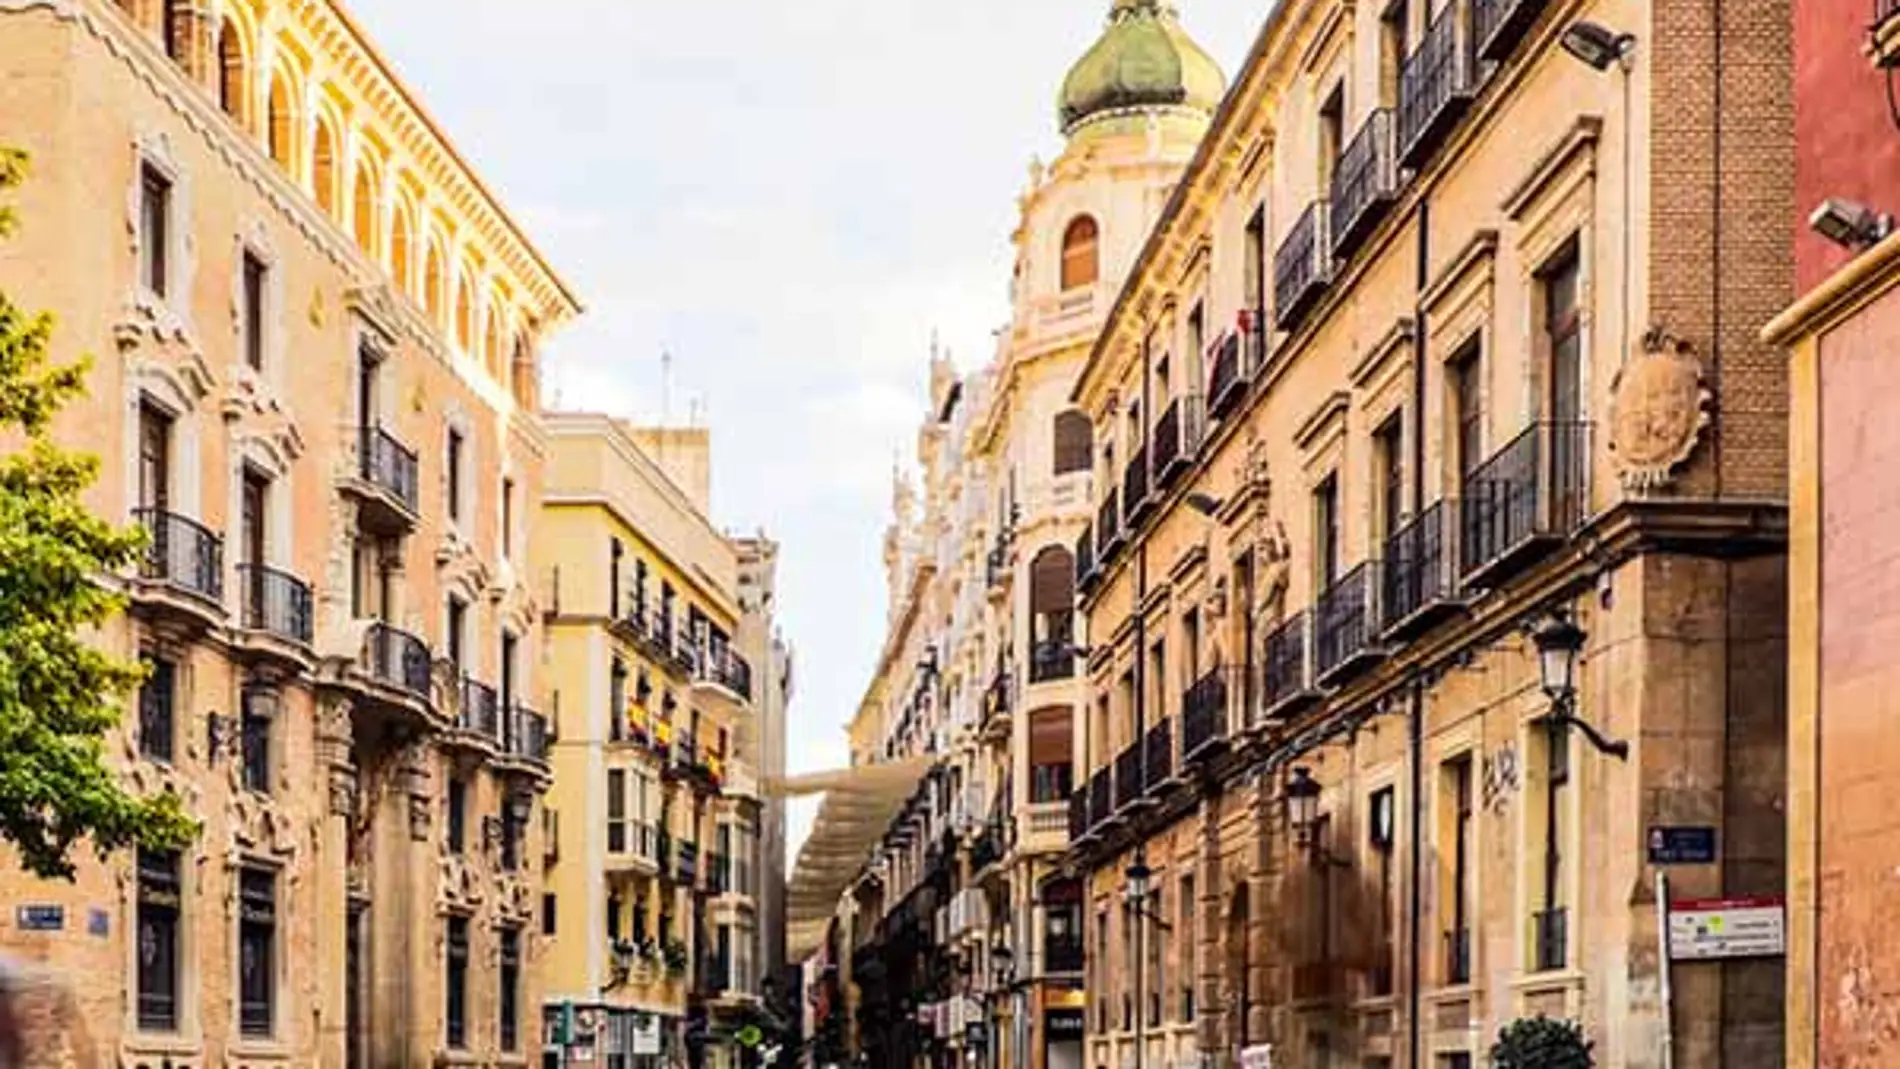 Imagen de una calle en el centro histórico de Murcia